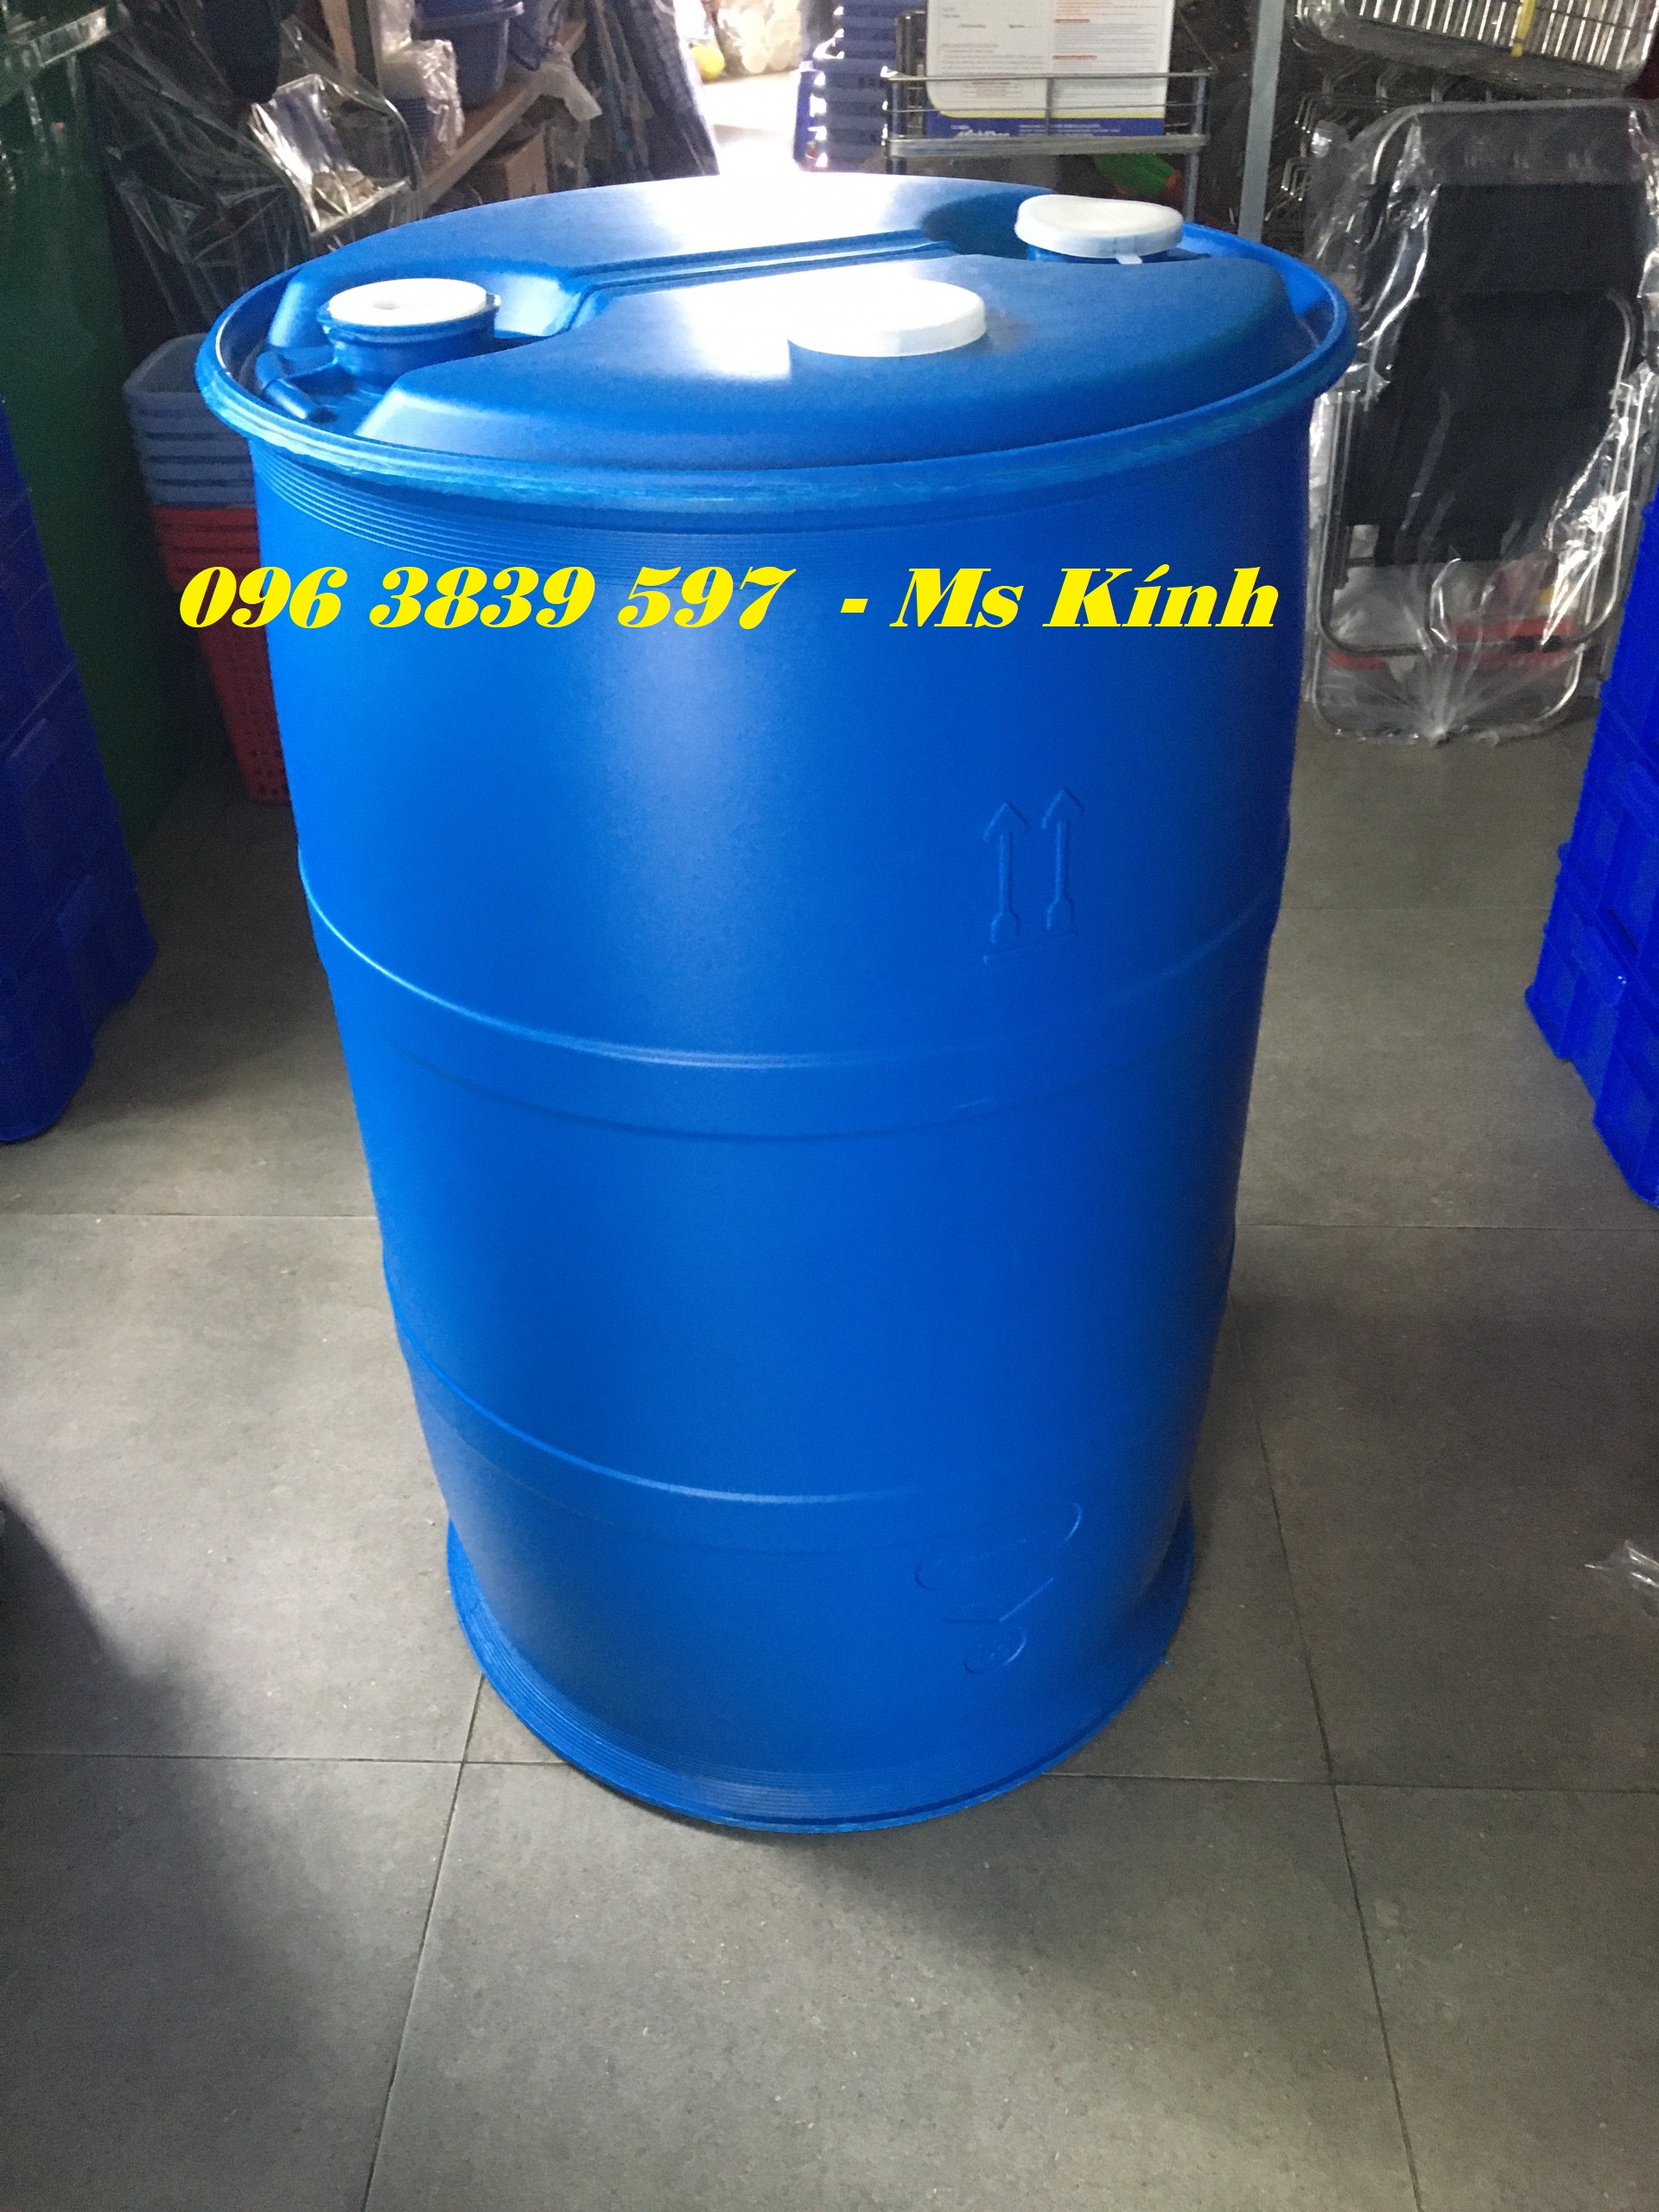 Cung cấp thùng phuy nhựa 220 lít, phuy nhựa đựng hóa chất - 0963839597